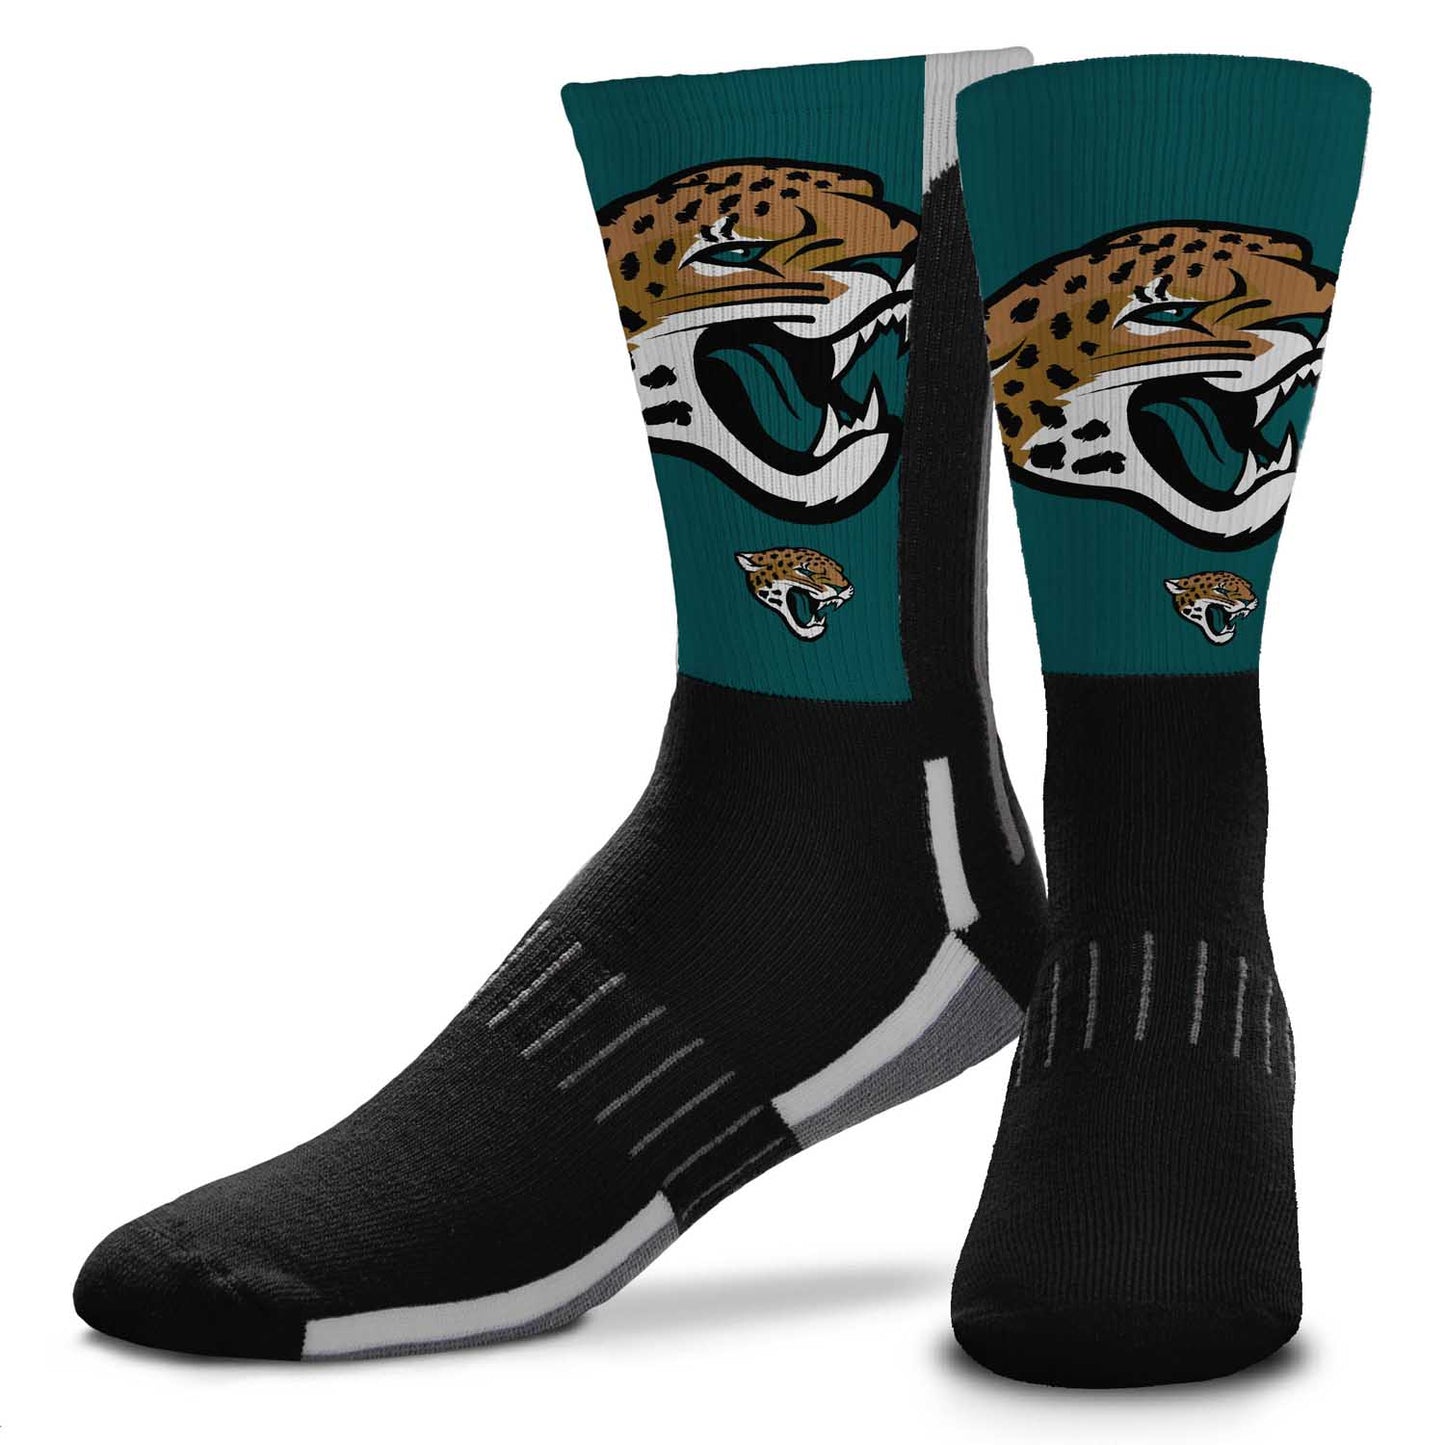 Jacksonville Jaguars NFL Youth V Curve Socks - Black